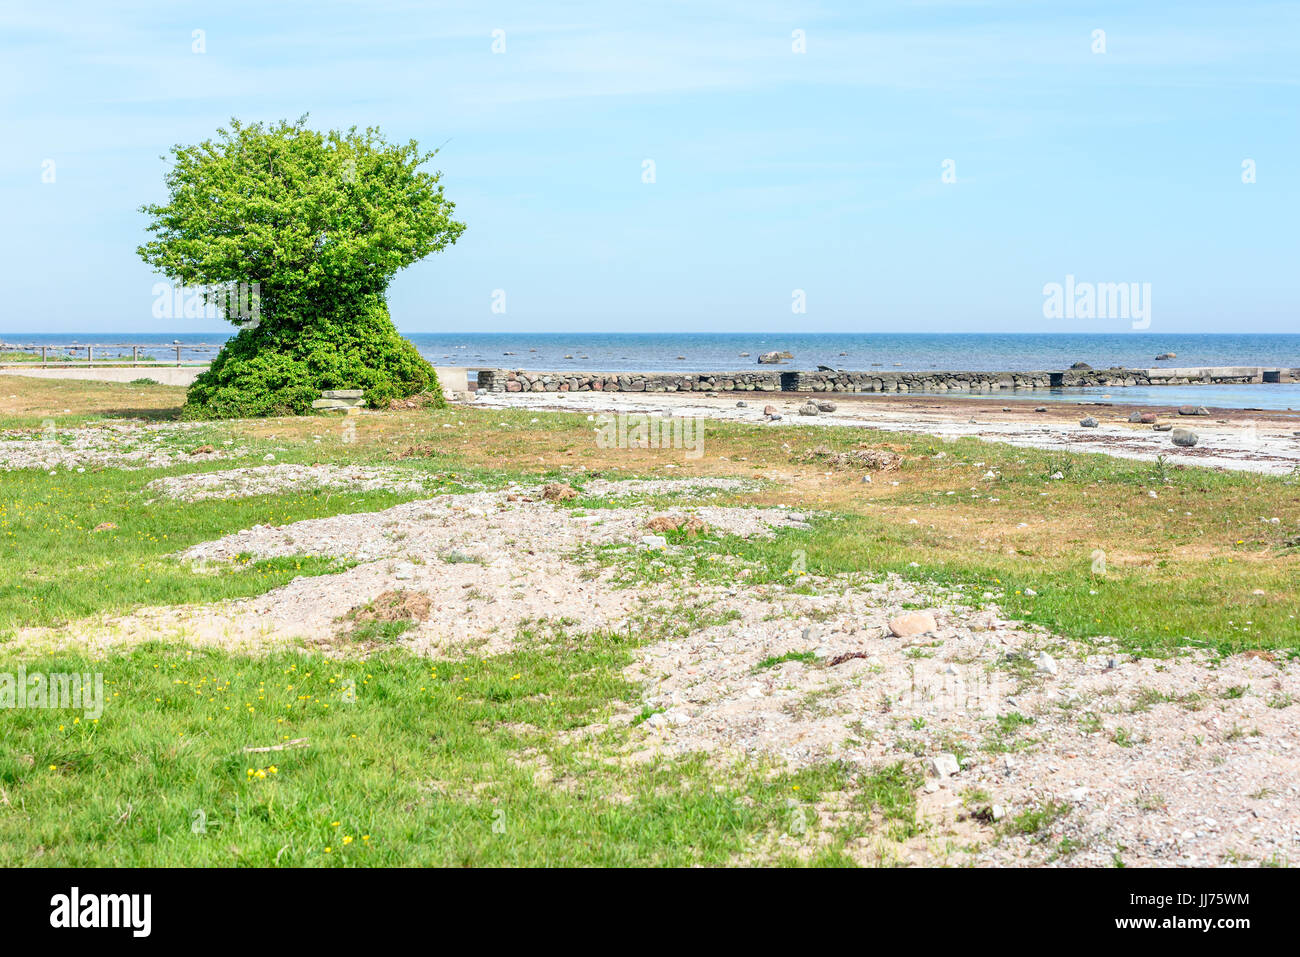 Strano e solitario albero che cresce sulla spiaggia. Struttura ad albero viene ricoperta con foglie da cima a fondo. Foto Stock